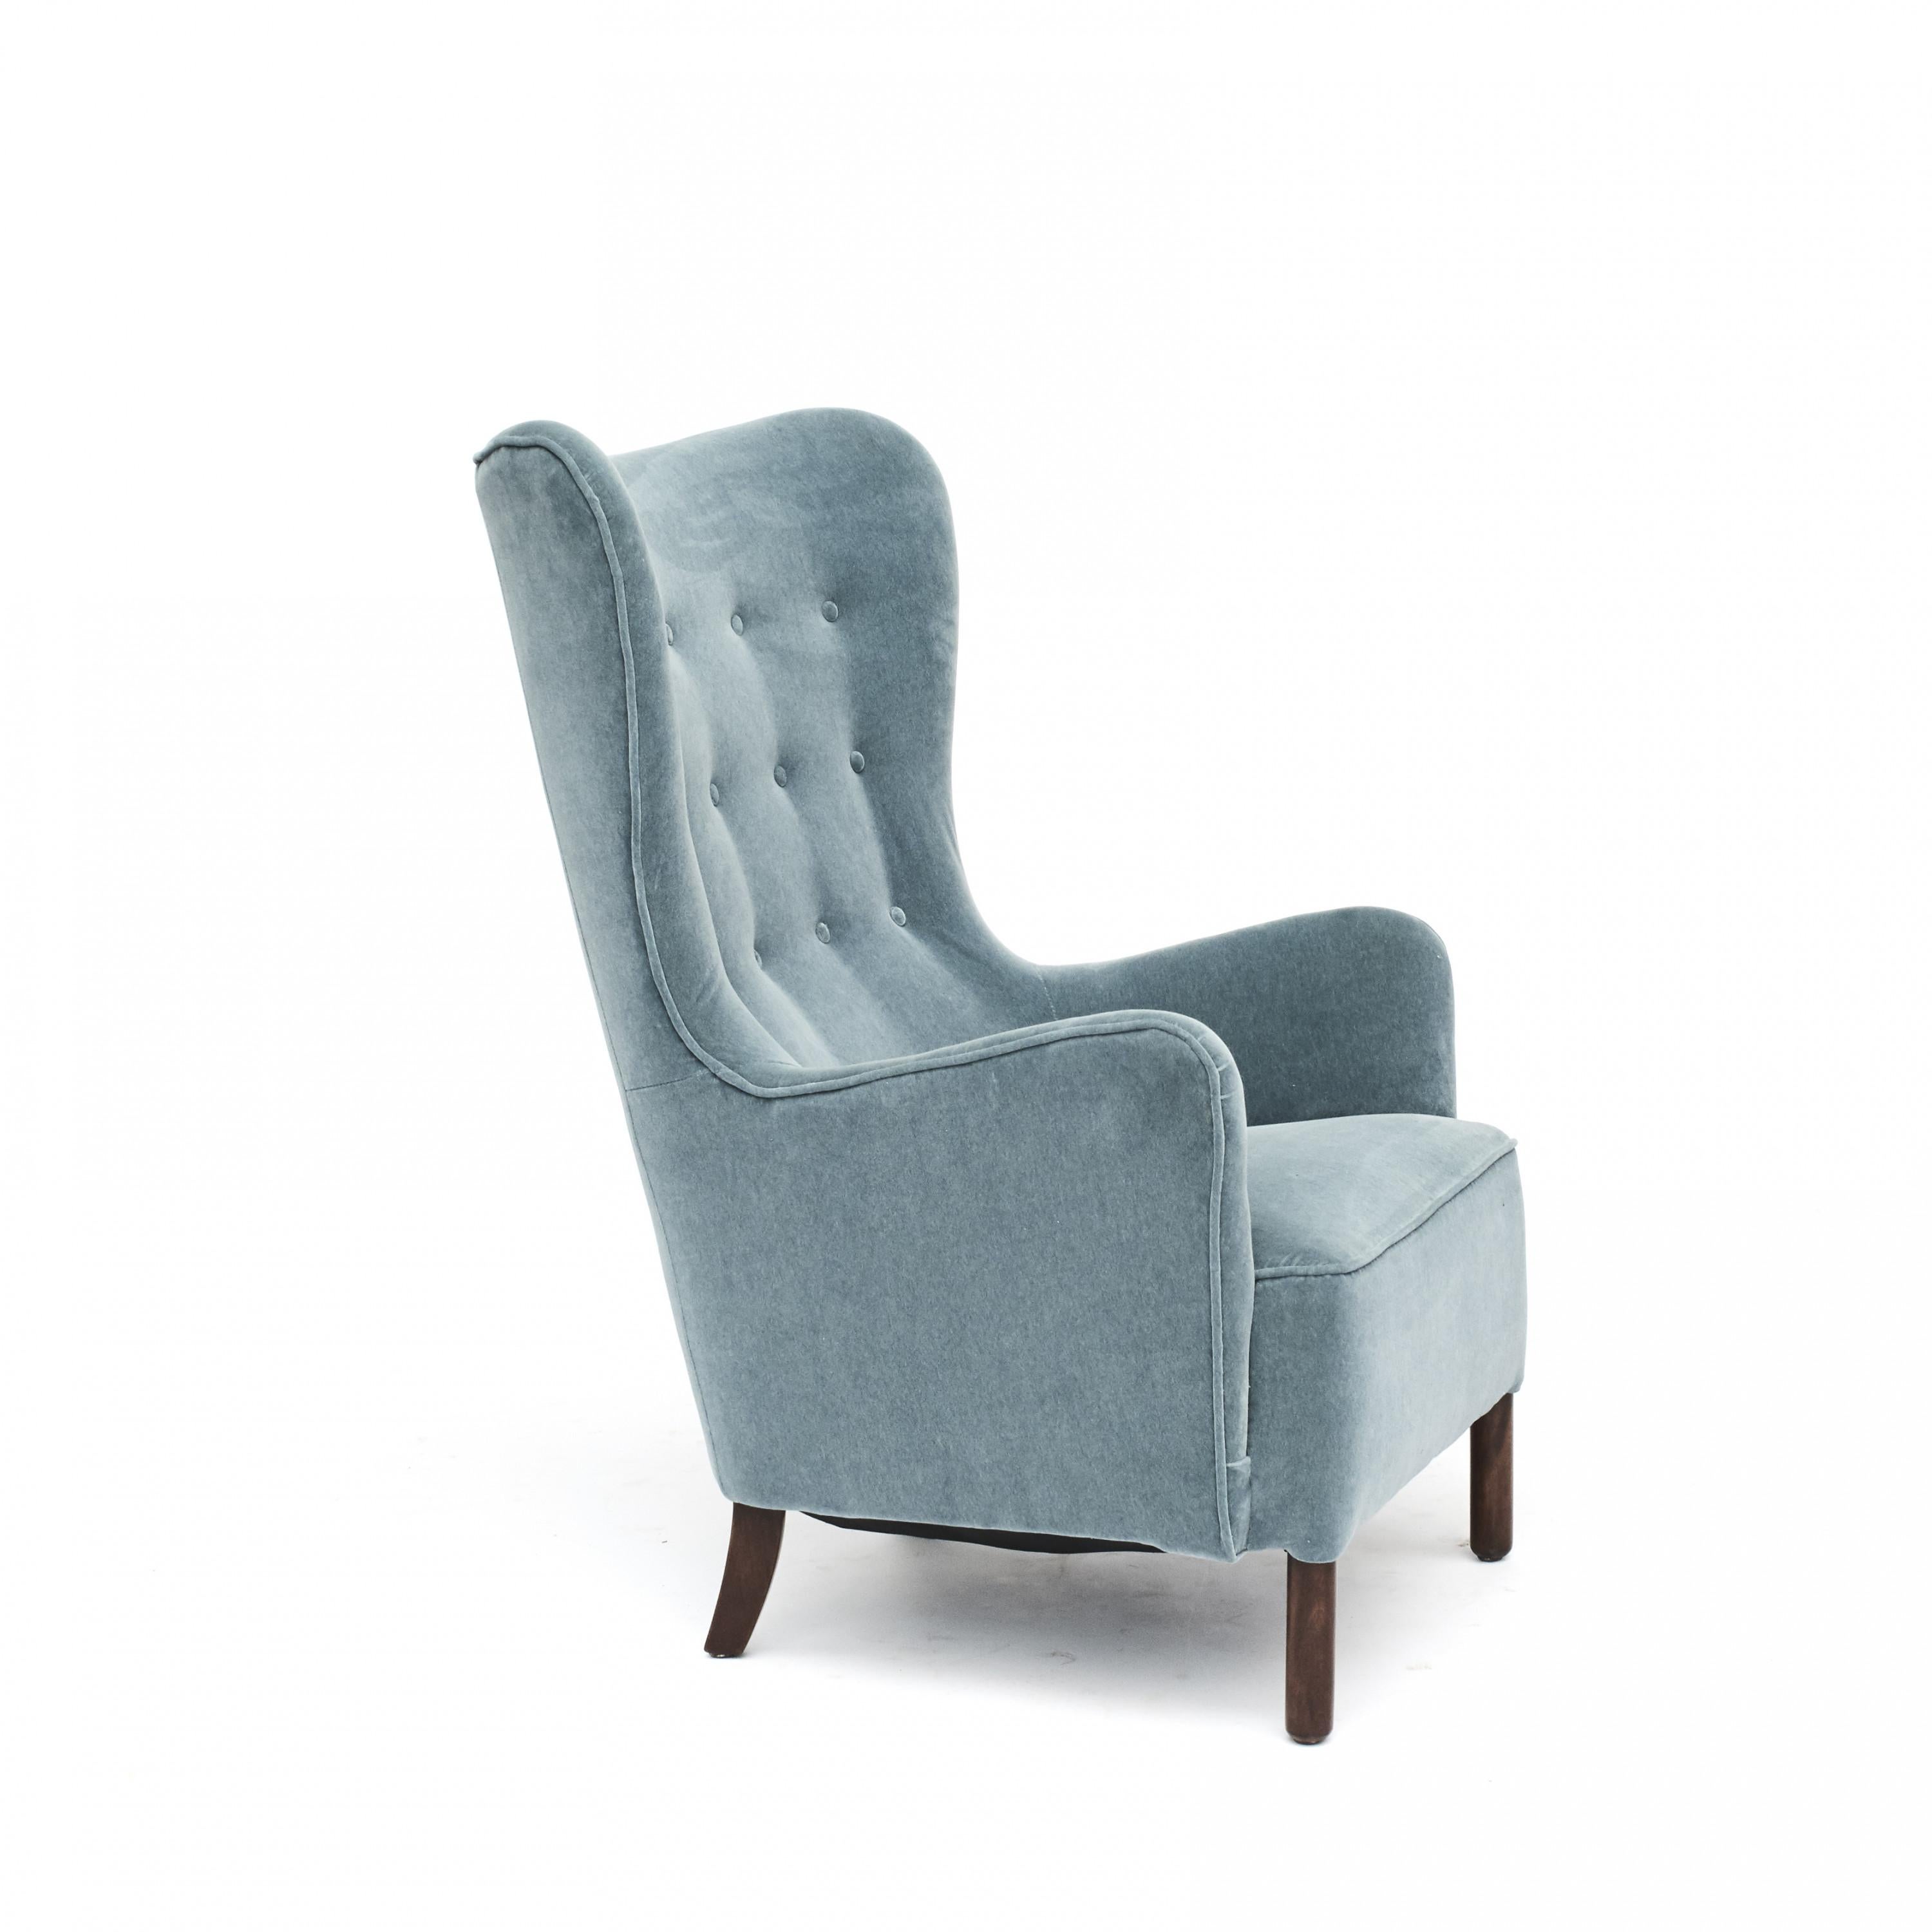 Dänischer Sessel, 1930-1940.
Professionell neu gepolstert mit wunderschönem petroleumblauem Samt von Churchill. Beine aus dunkel poliertem Buchenholz.
Der Stuhl ist sehr bequem zu sitzen.